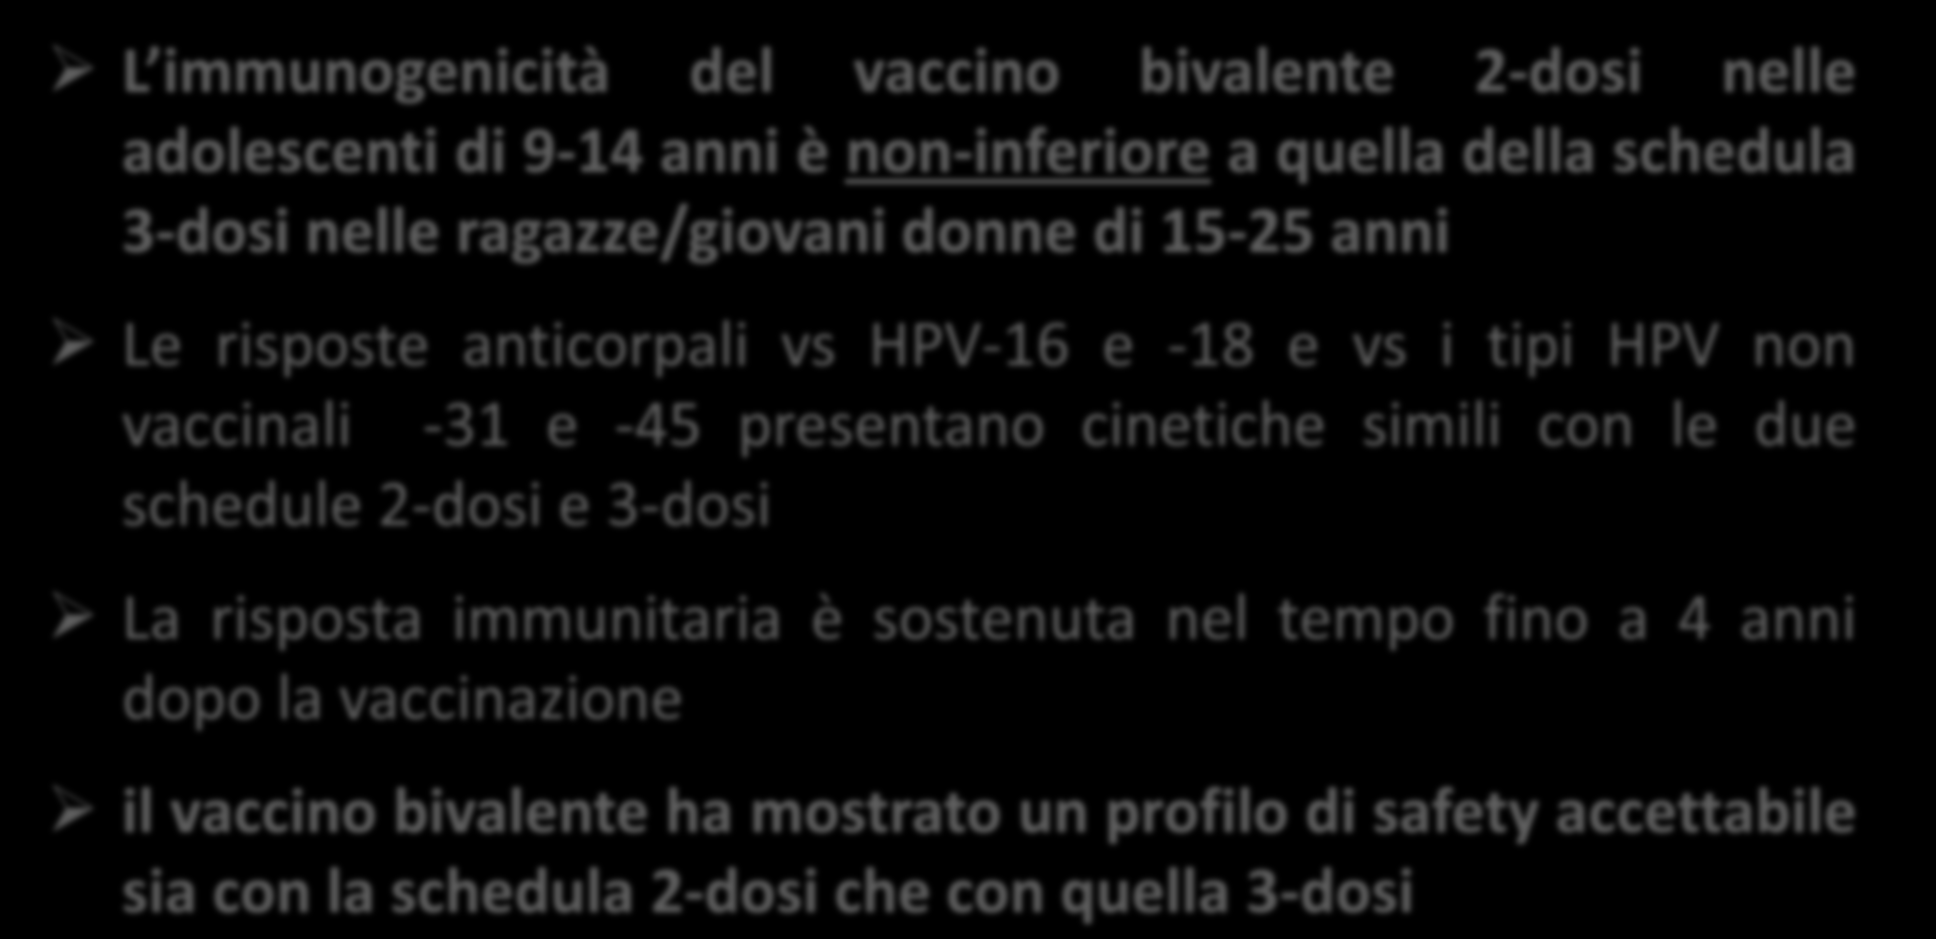 Studio HPV-048 Considerazioni L immunogenicità del vaccino bivalente 2-dosi nelle adolescenti di 9-14 anni è non-inferiore a quella della schedula 3-dosi nelle ragazze/giovani donne di 15-25 anni Le